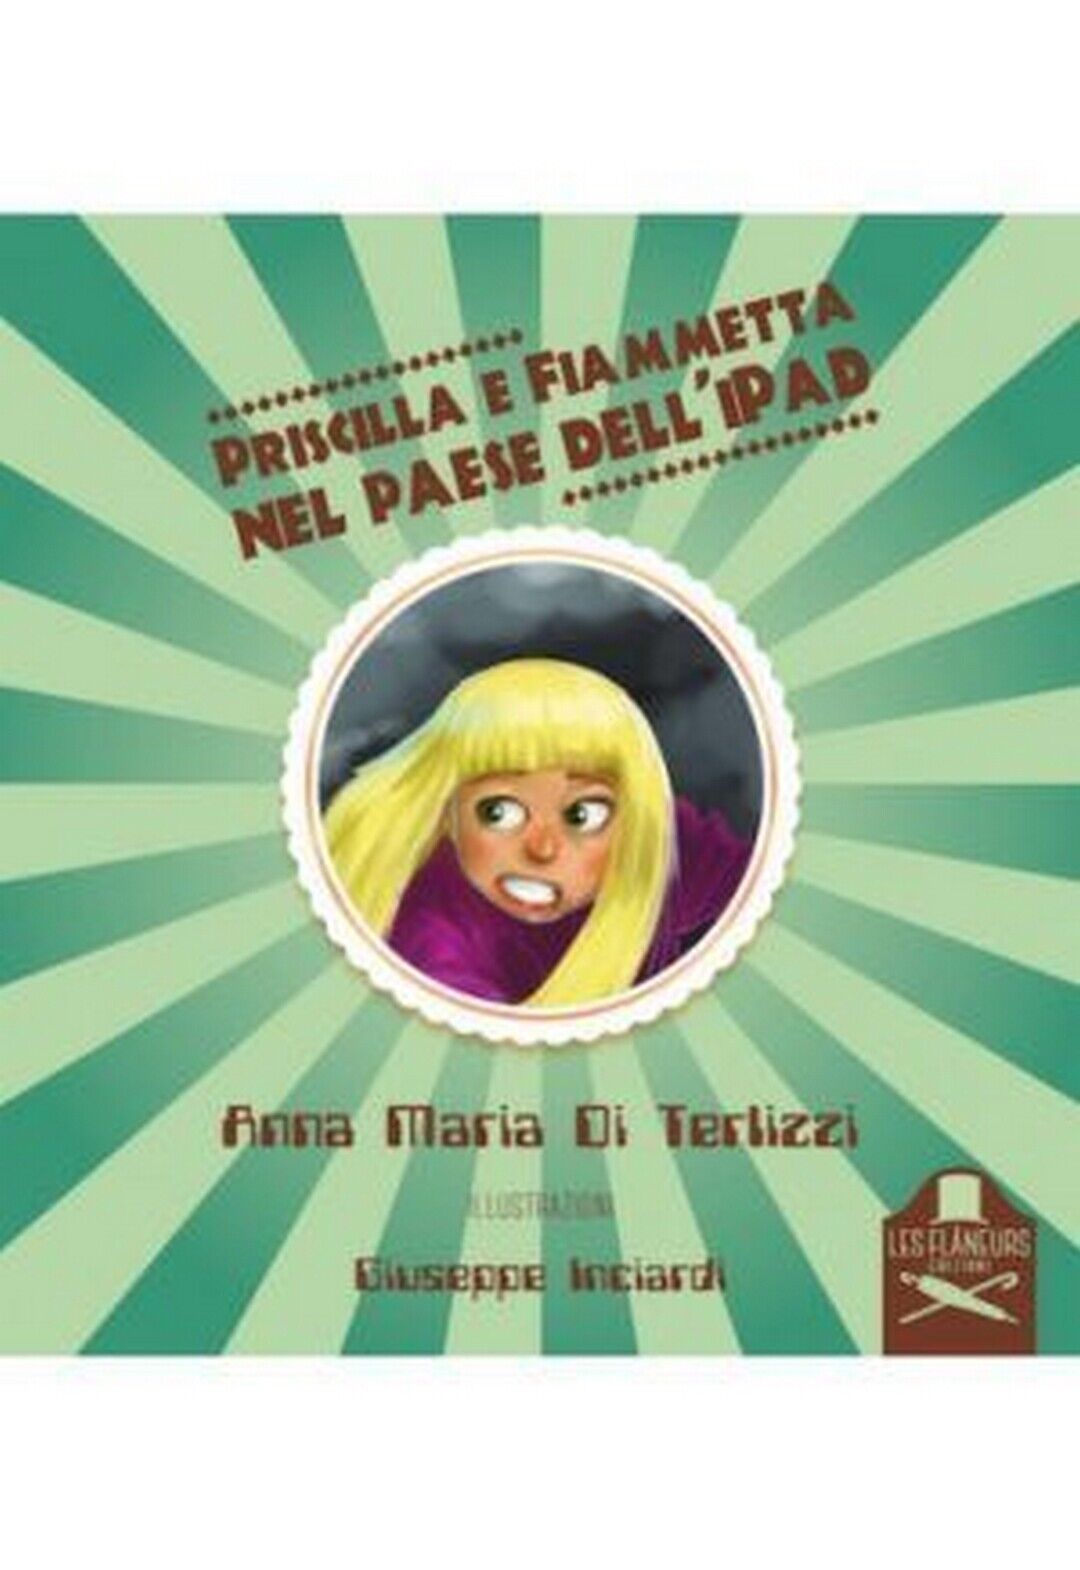 Priscilla e Fiammetta nel paese delL'iPad  di Anna Maria Di Terlizzi ,  Flaneurs libro usato